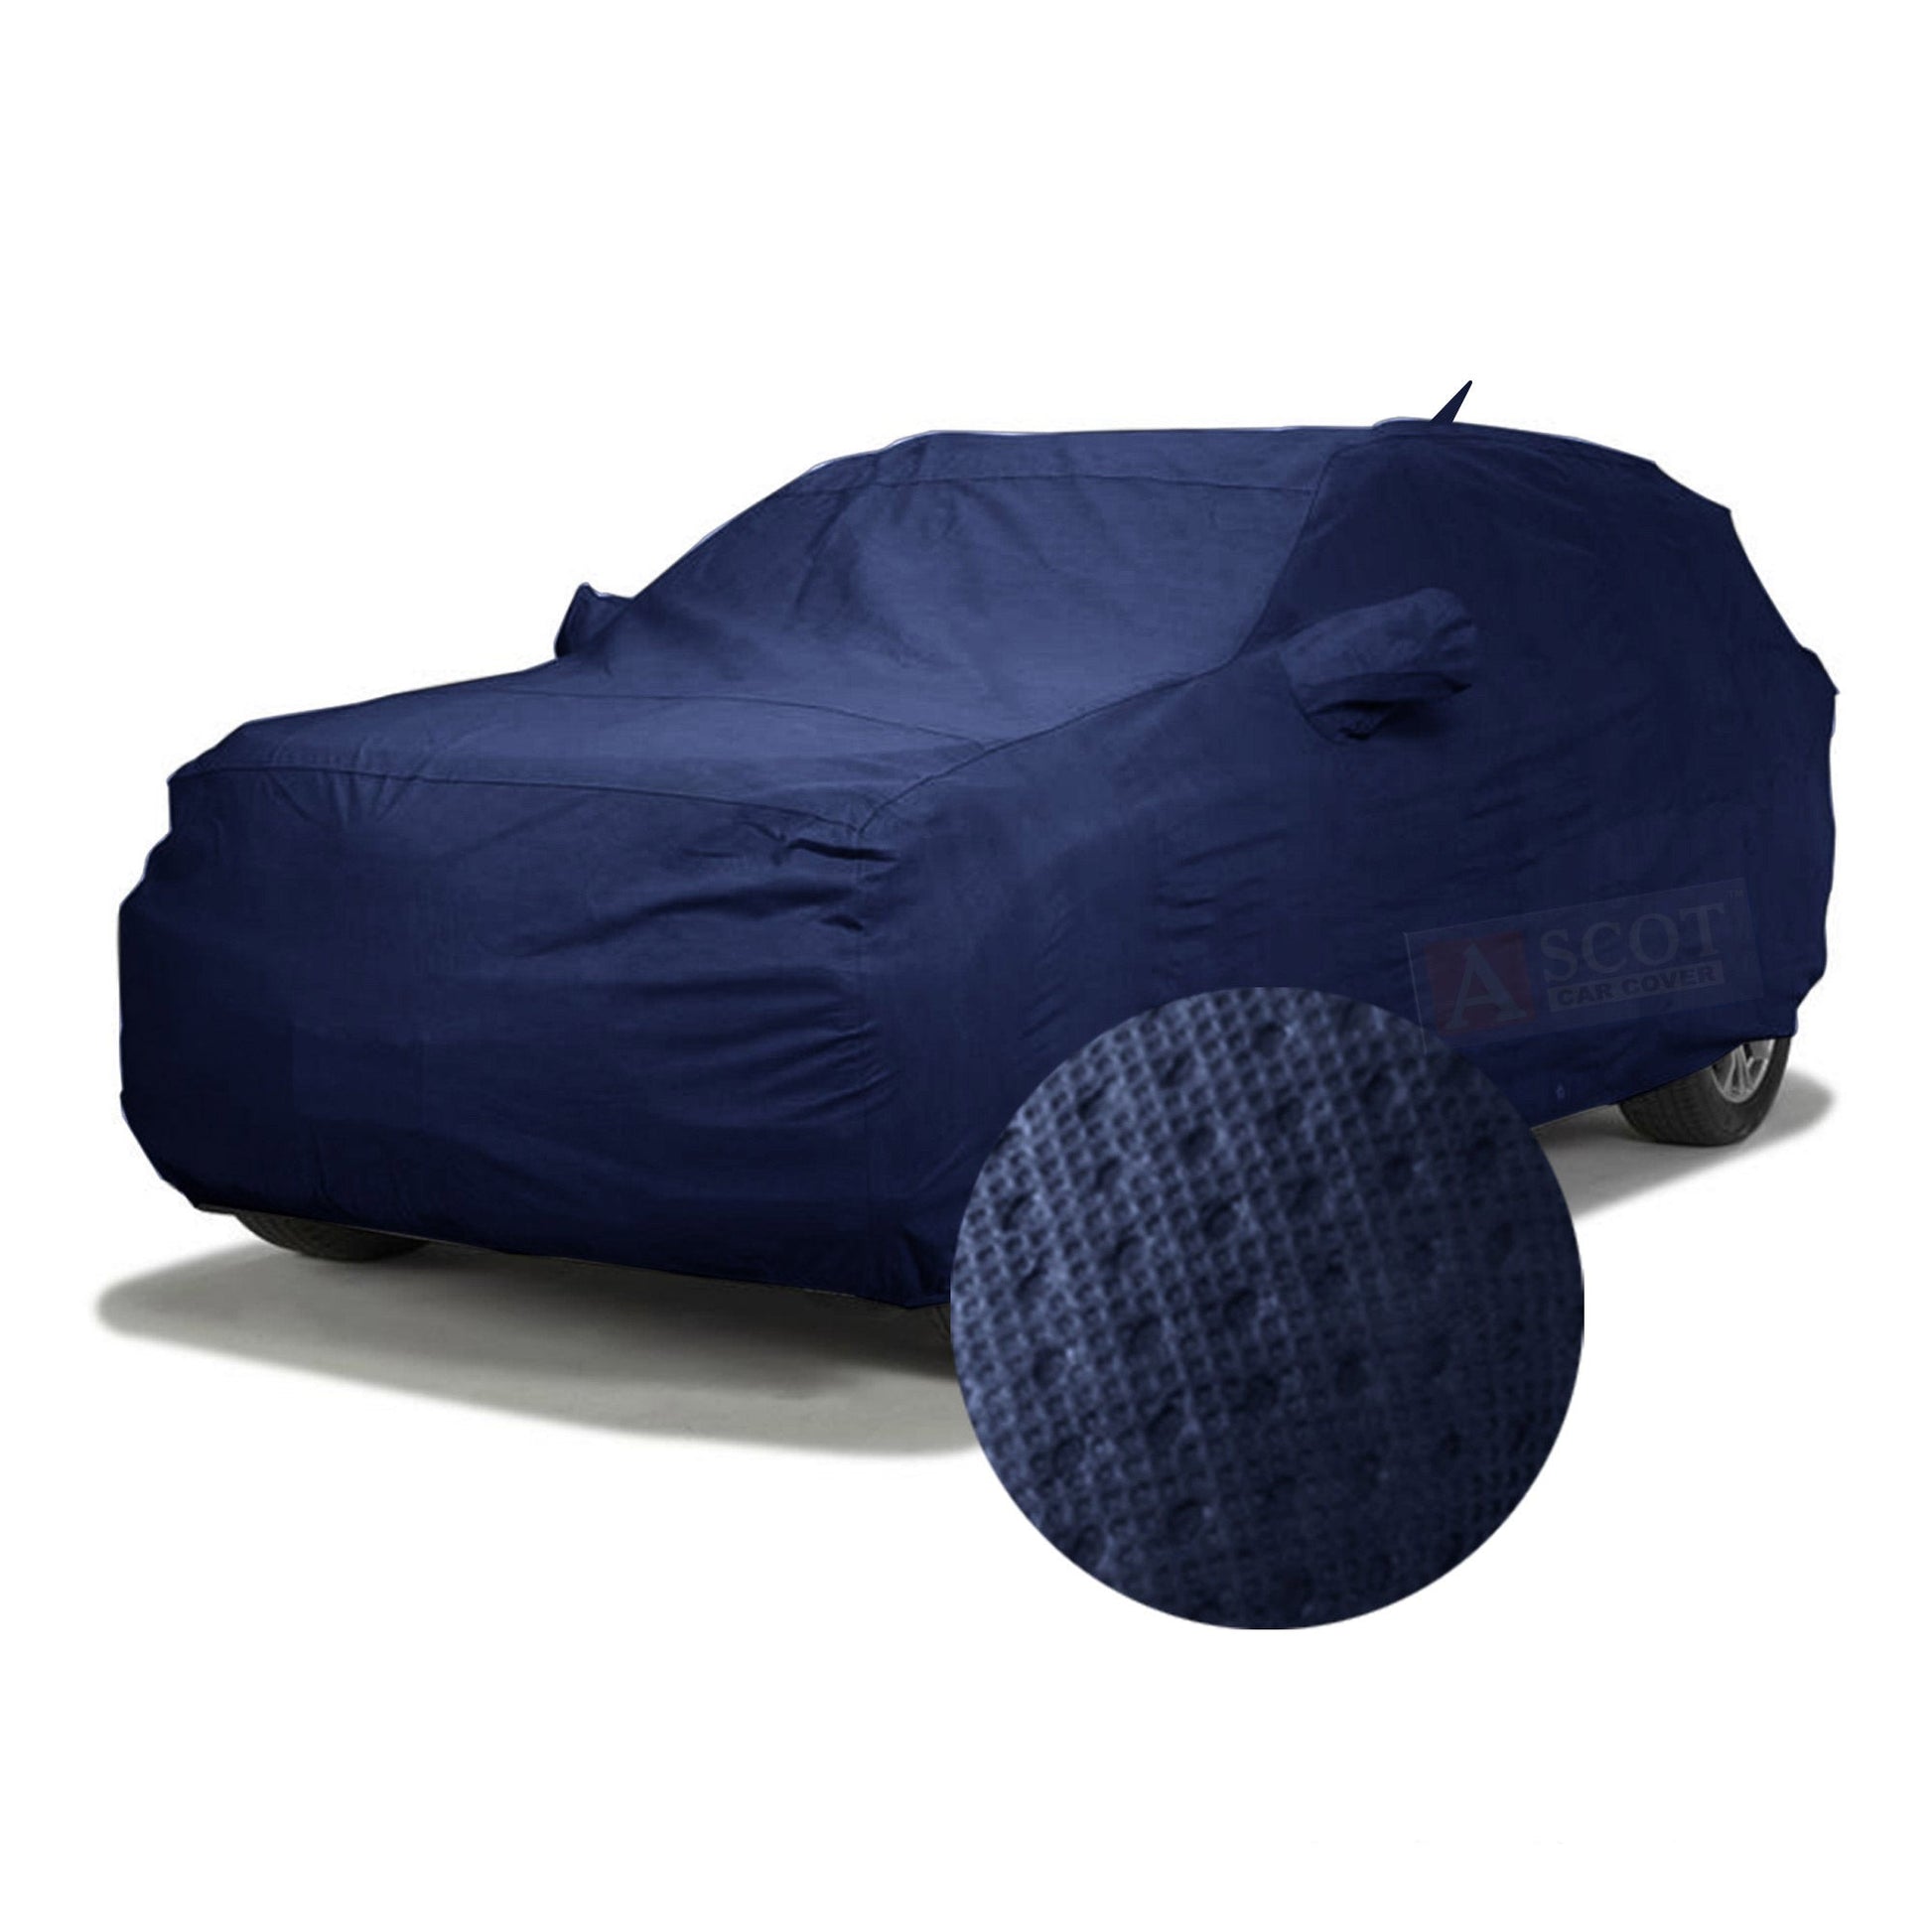 Ascot Skoda Fabia Car Cover Waterproof 2007-2014 Model 3 Layers